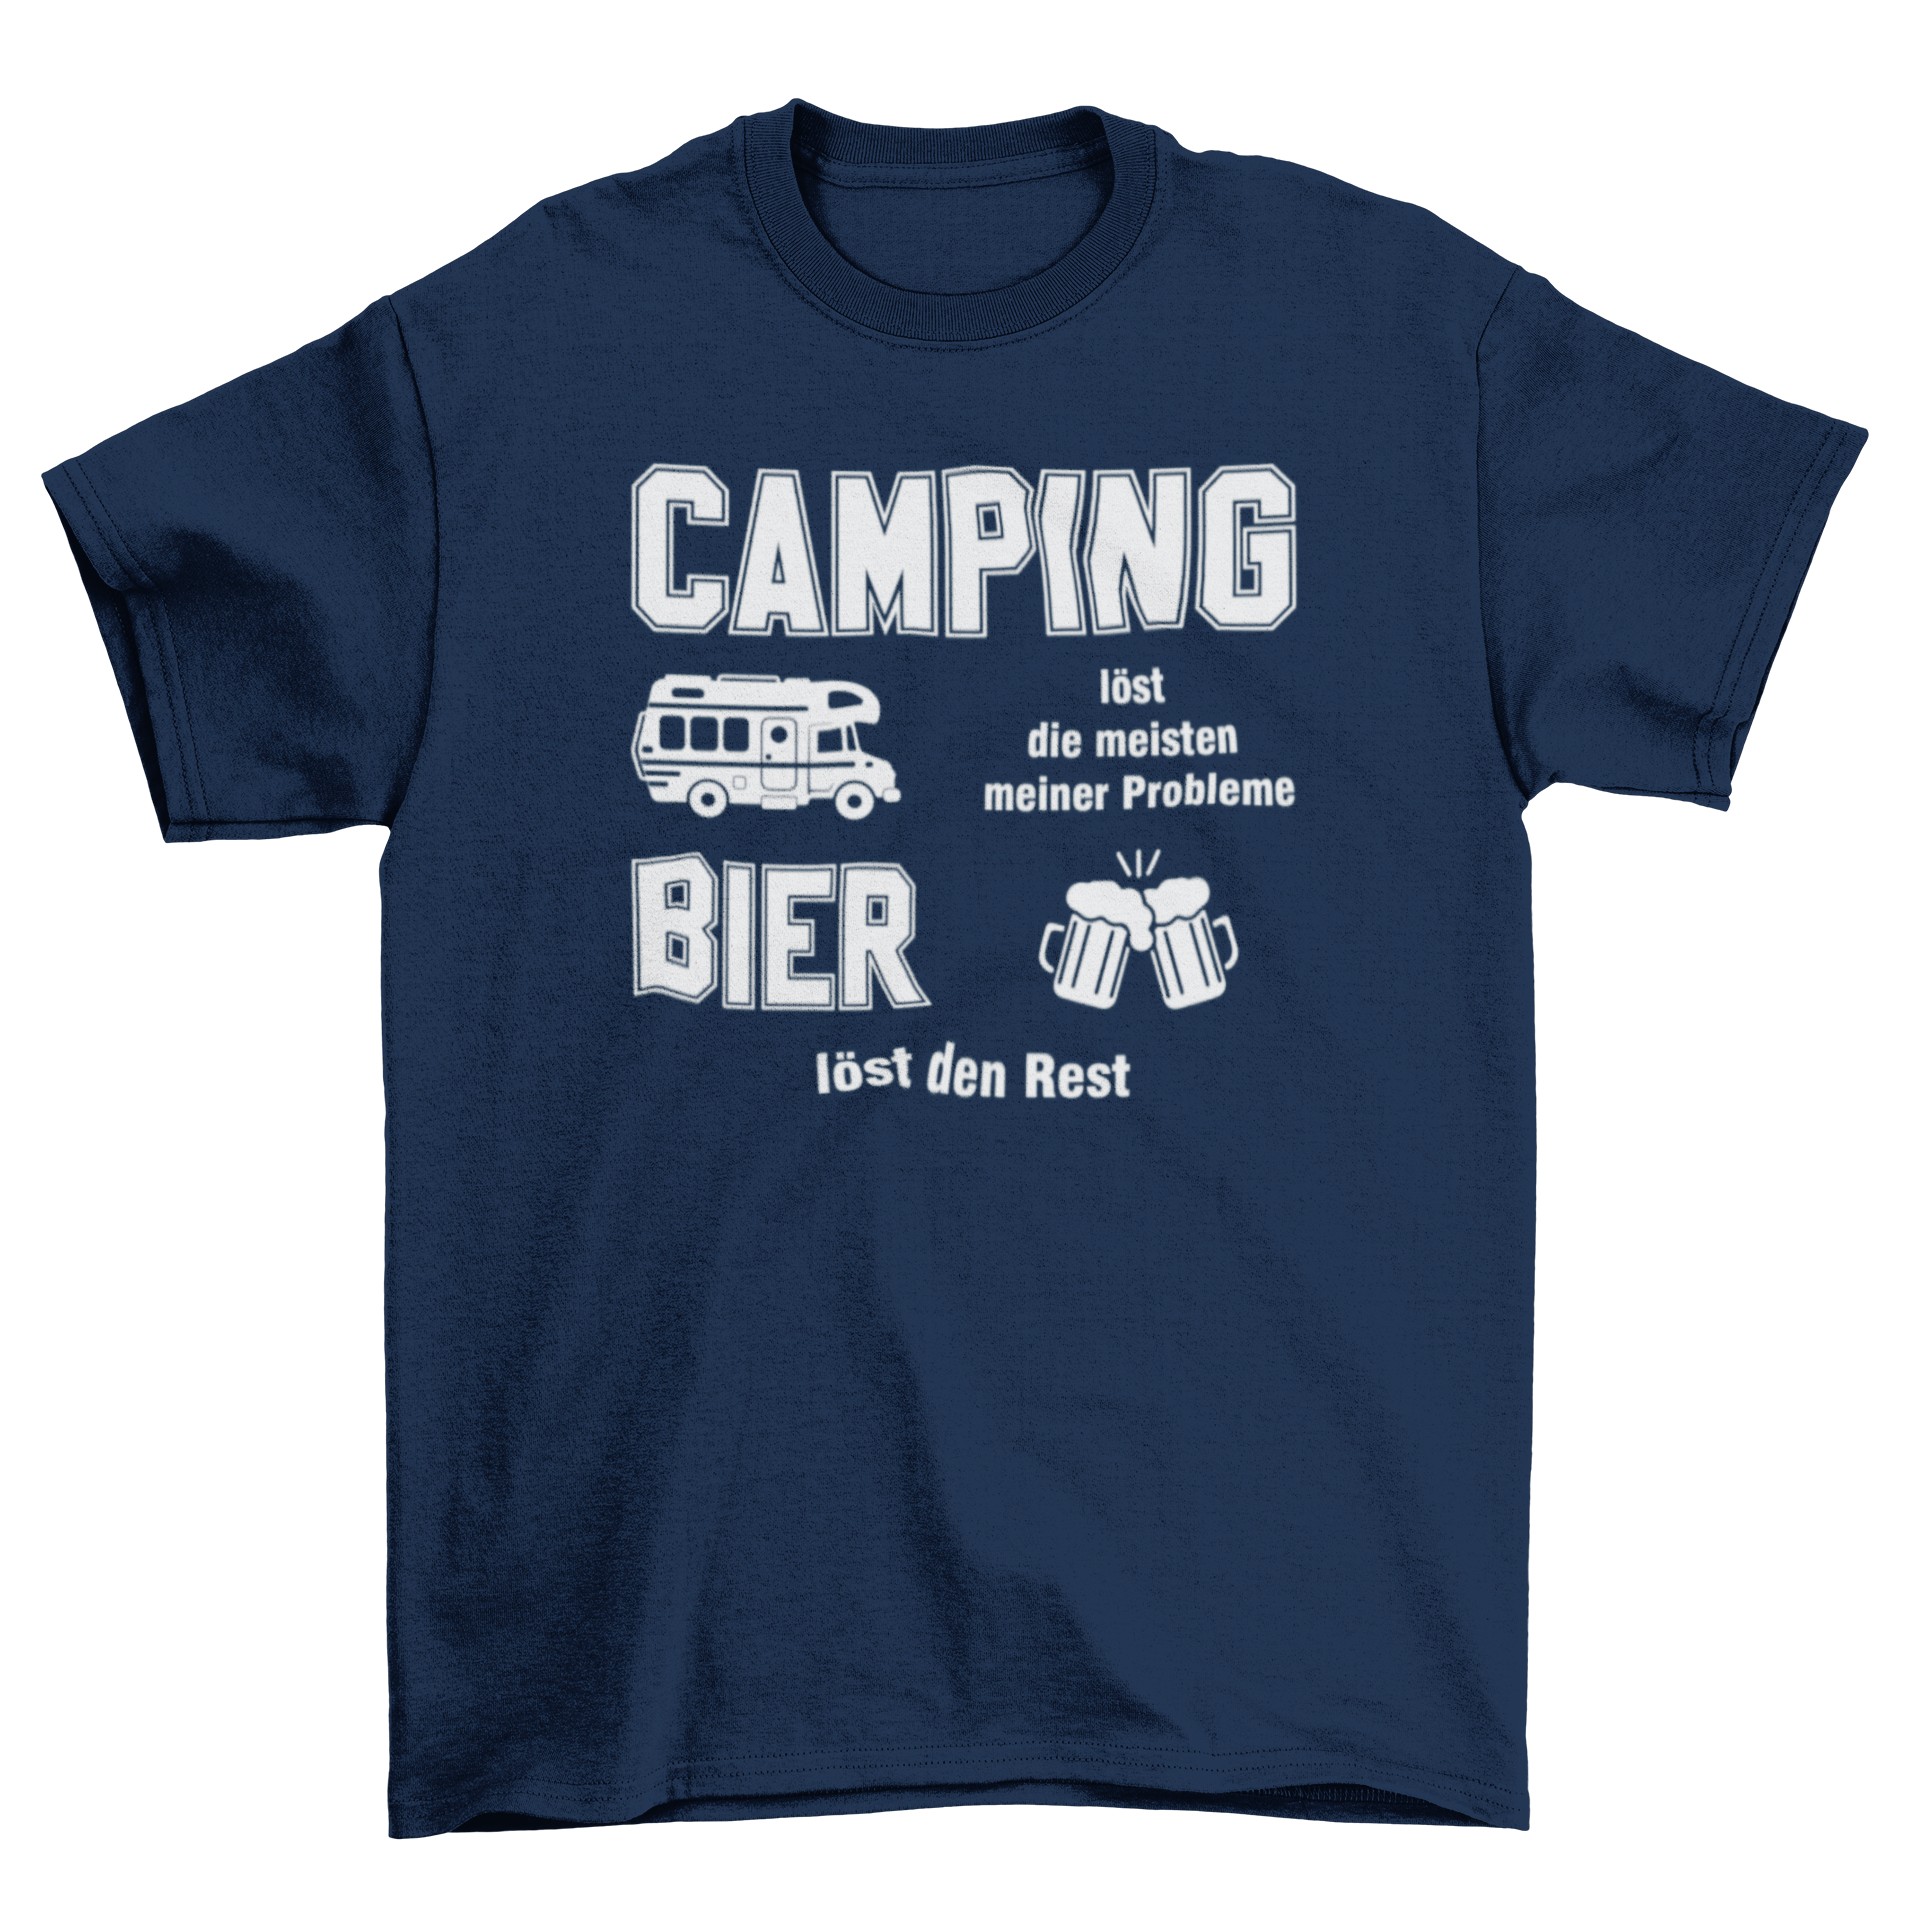 Camping löst die meisten meiner Probleme  - T-Shirt